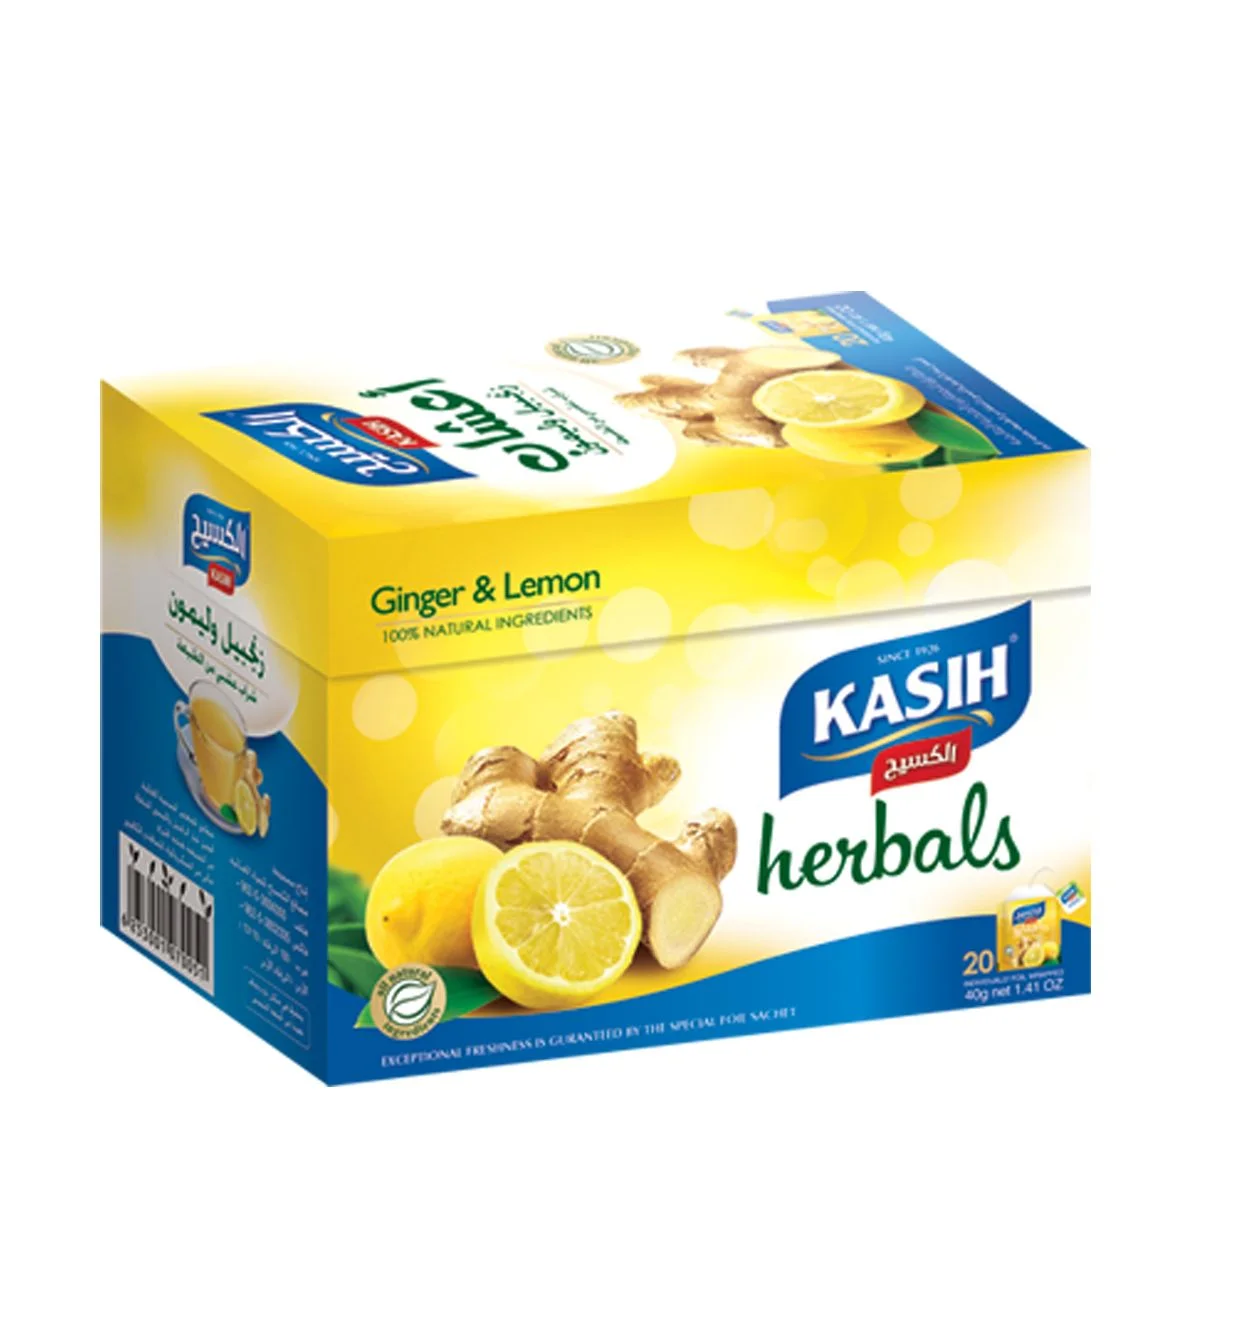 KASIH herbals ginger lemon